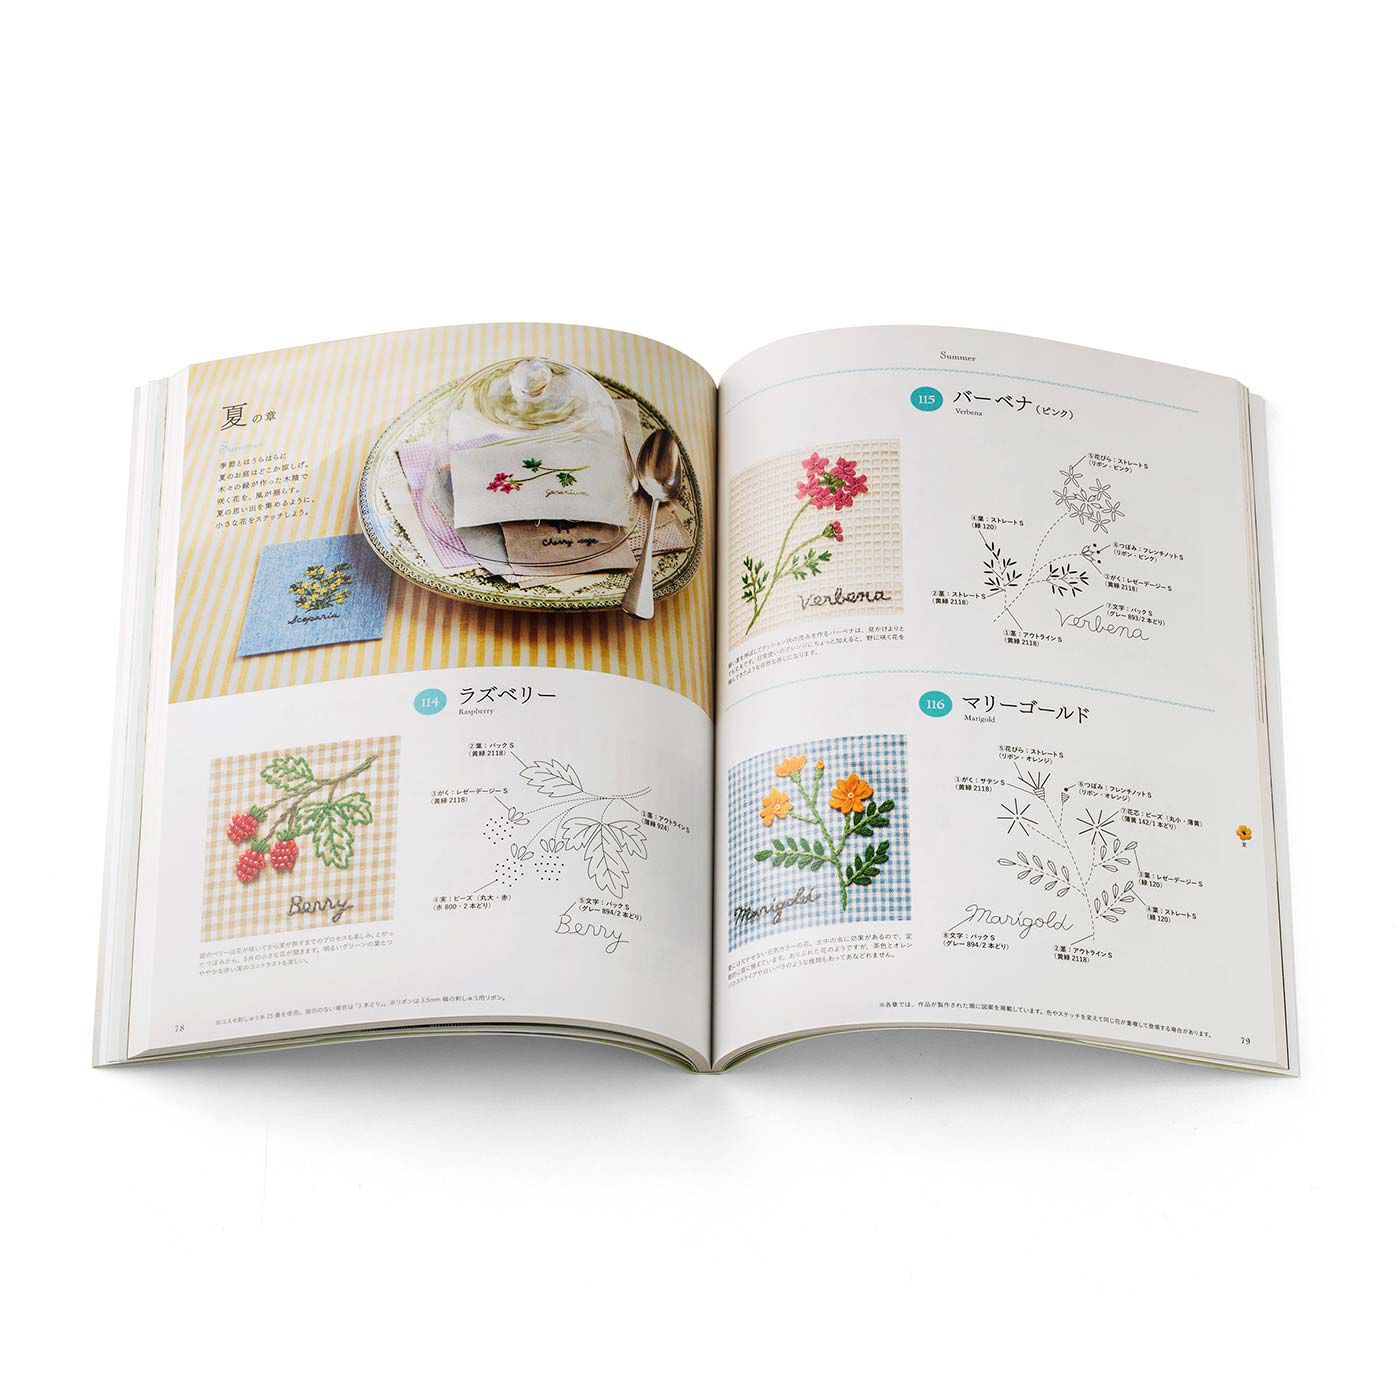 Couturier|季節のお花で暮らしに彩りを 187の刺繍デザイン 青木 和子さんのお庭から|1年を6つの章に分けて、季節の草花を見本写真と実物大の図案で紹介しています。